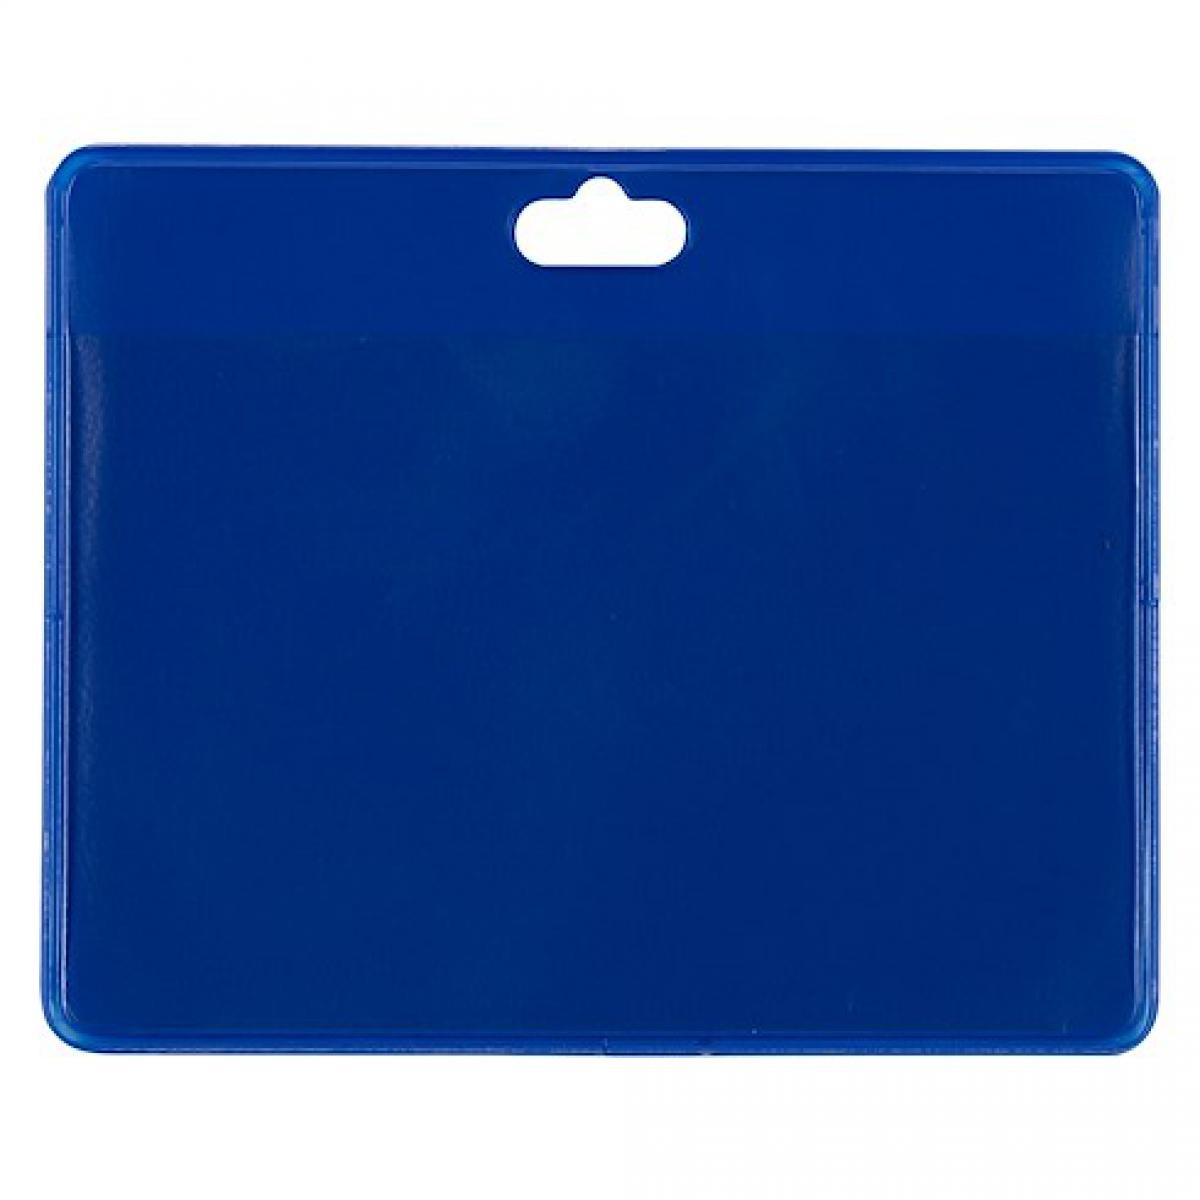 Tarifold - Boîte de 30 badges souples sans attache tarifold 70 x 100 mm - bleus - Accessoires Bureau